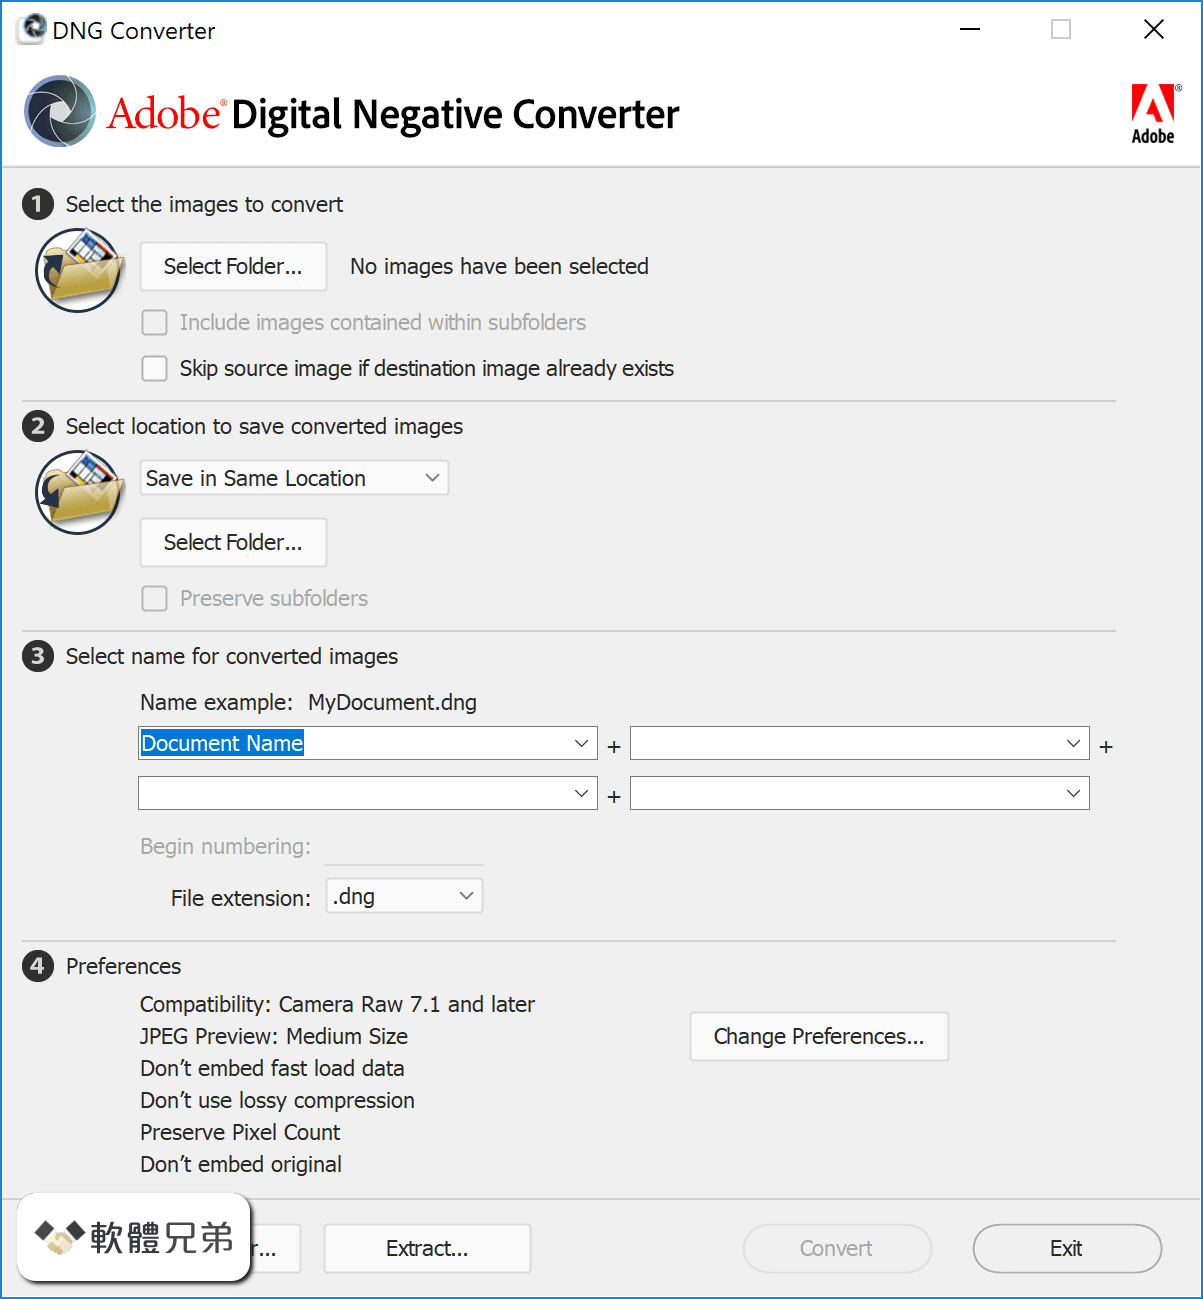 Adobe DNG Converter Screenshot 1